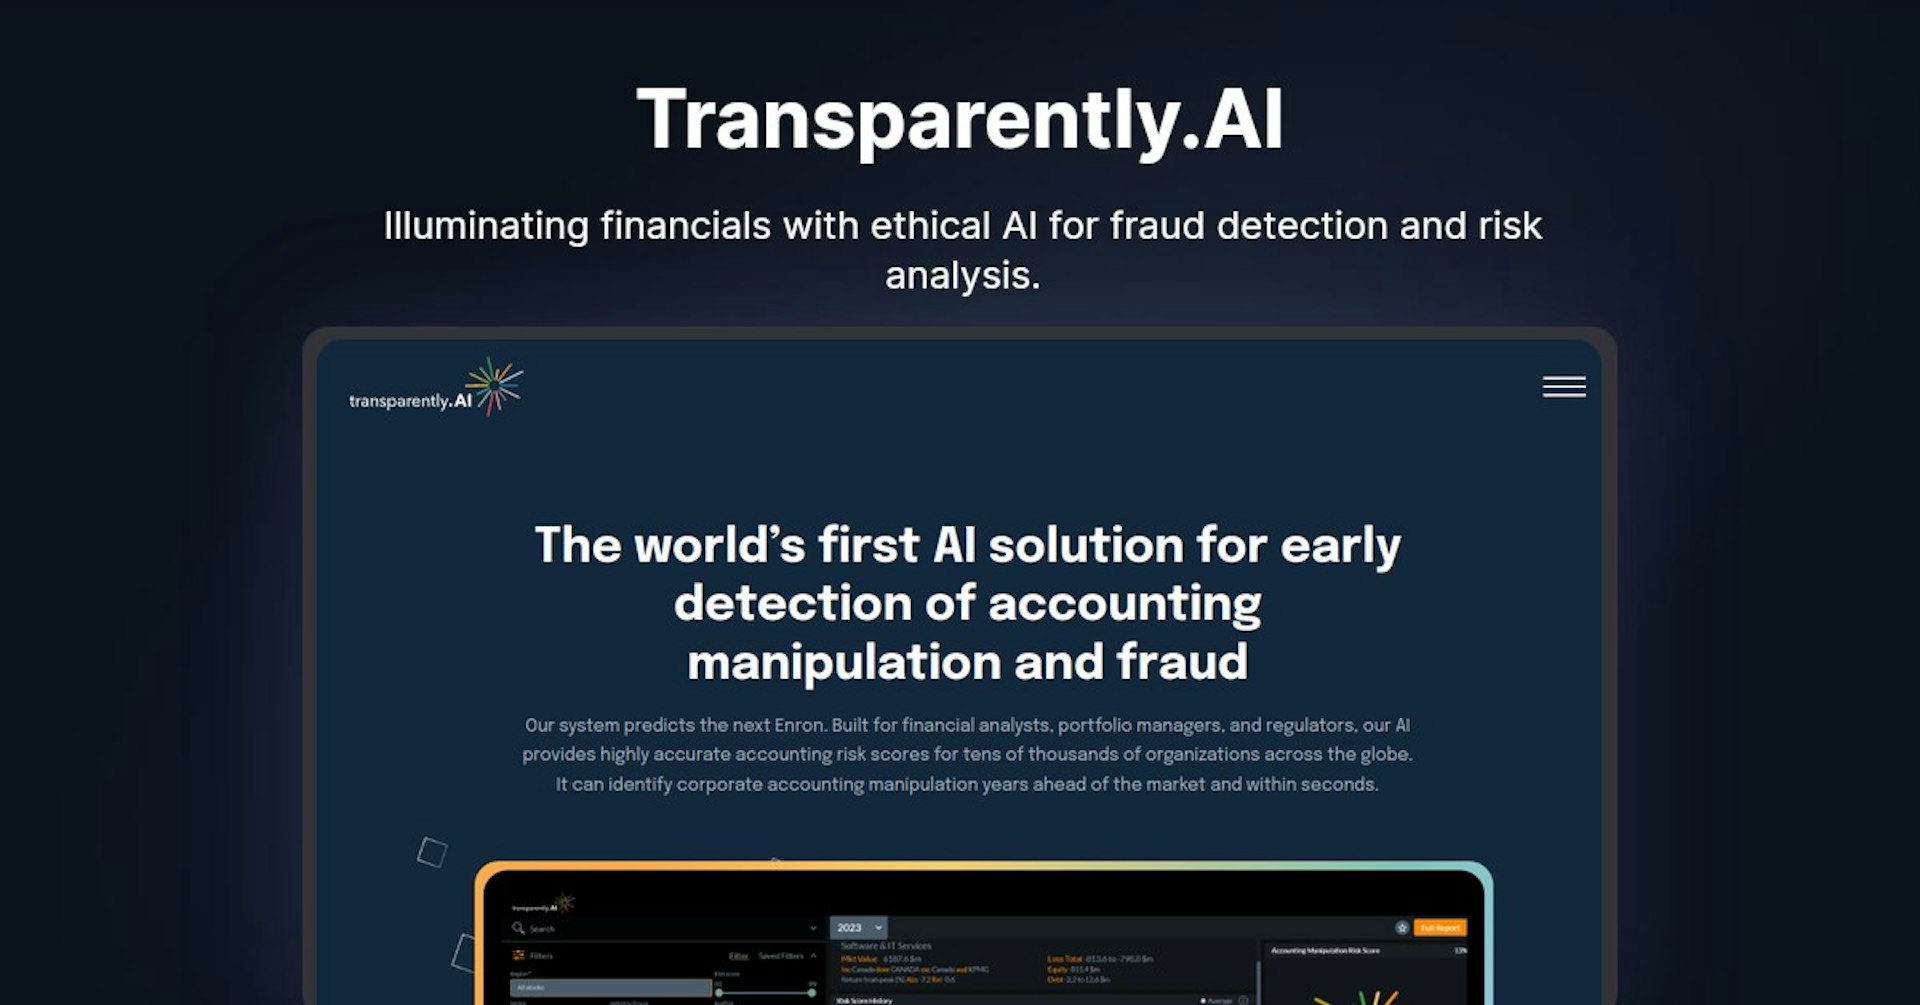 Transparently.AI